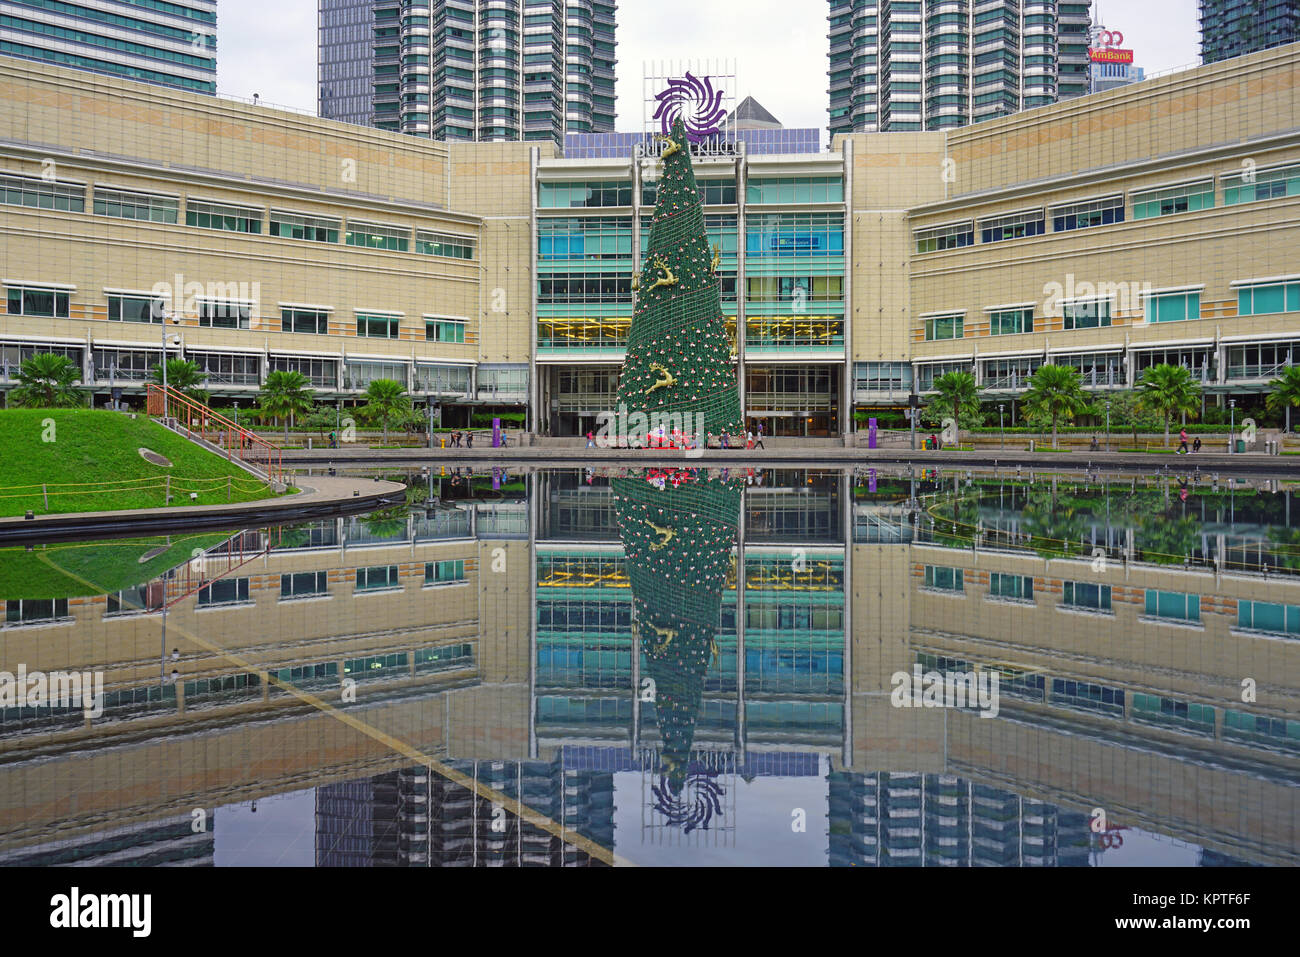 Vue sur le parc KLCC, un jardin public à proximité de centre commercial Suria KLCC et les Tours Petronas Twin Towers, situé à Kuala Lumpur, Malaisie Banque D'Images